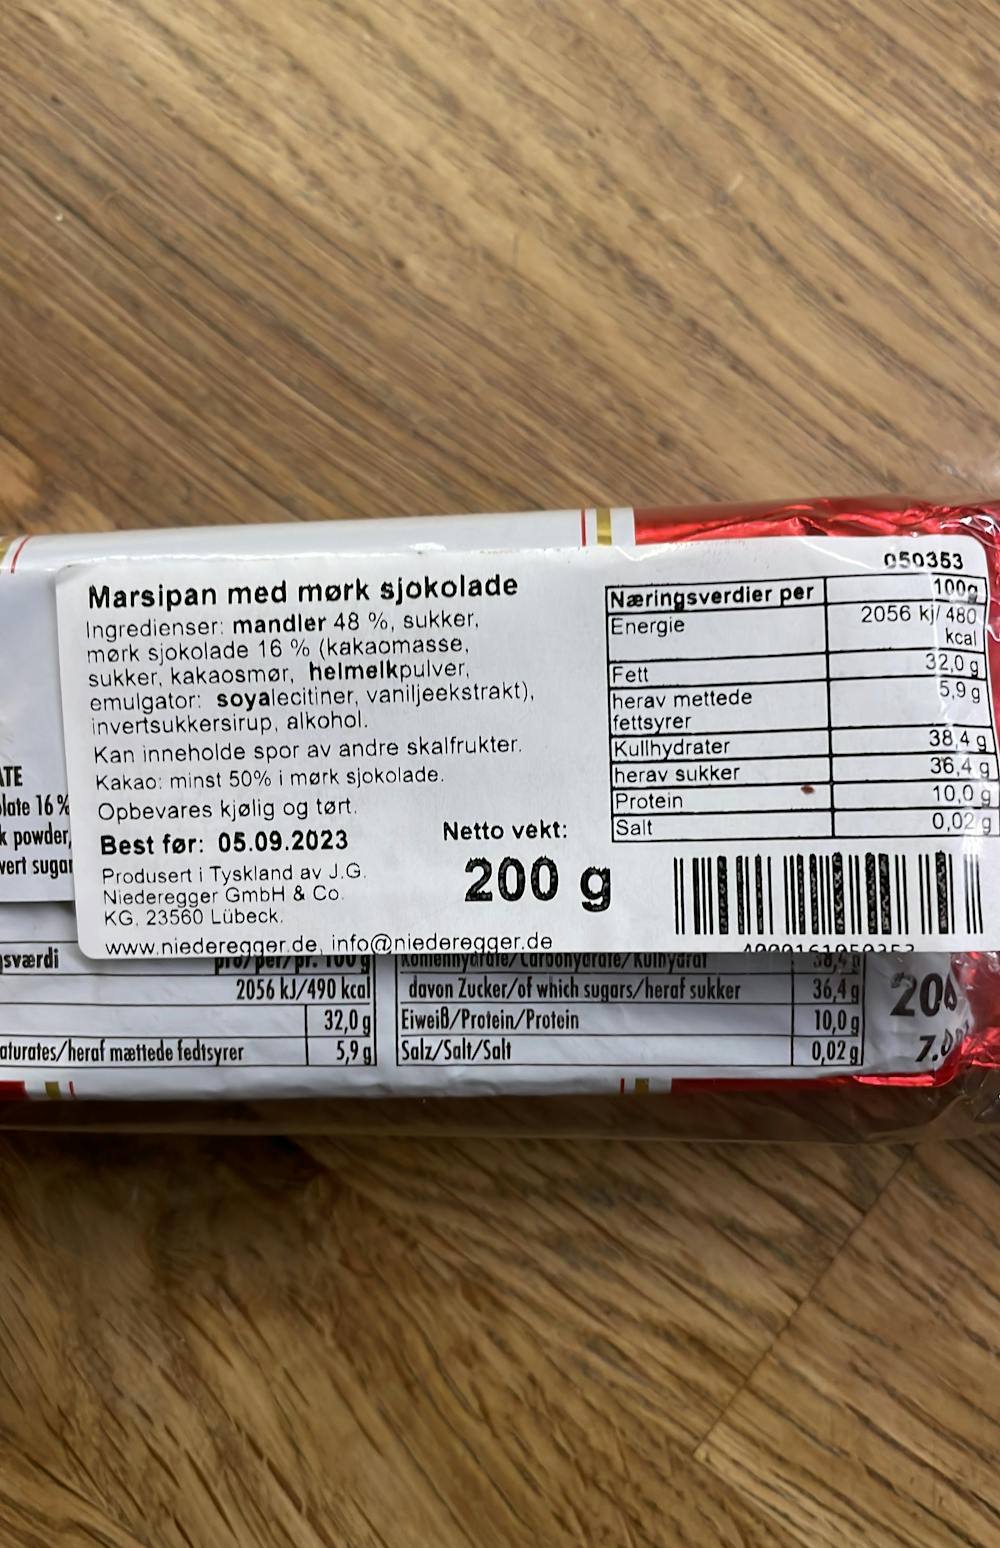 Ingrediensliste - Marsipan med sjokoladetrekk, Niederegger Lübeck